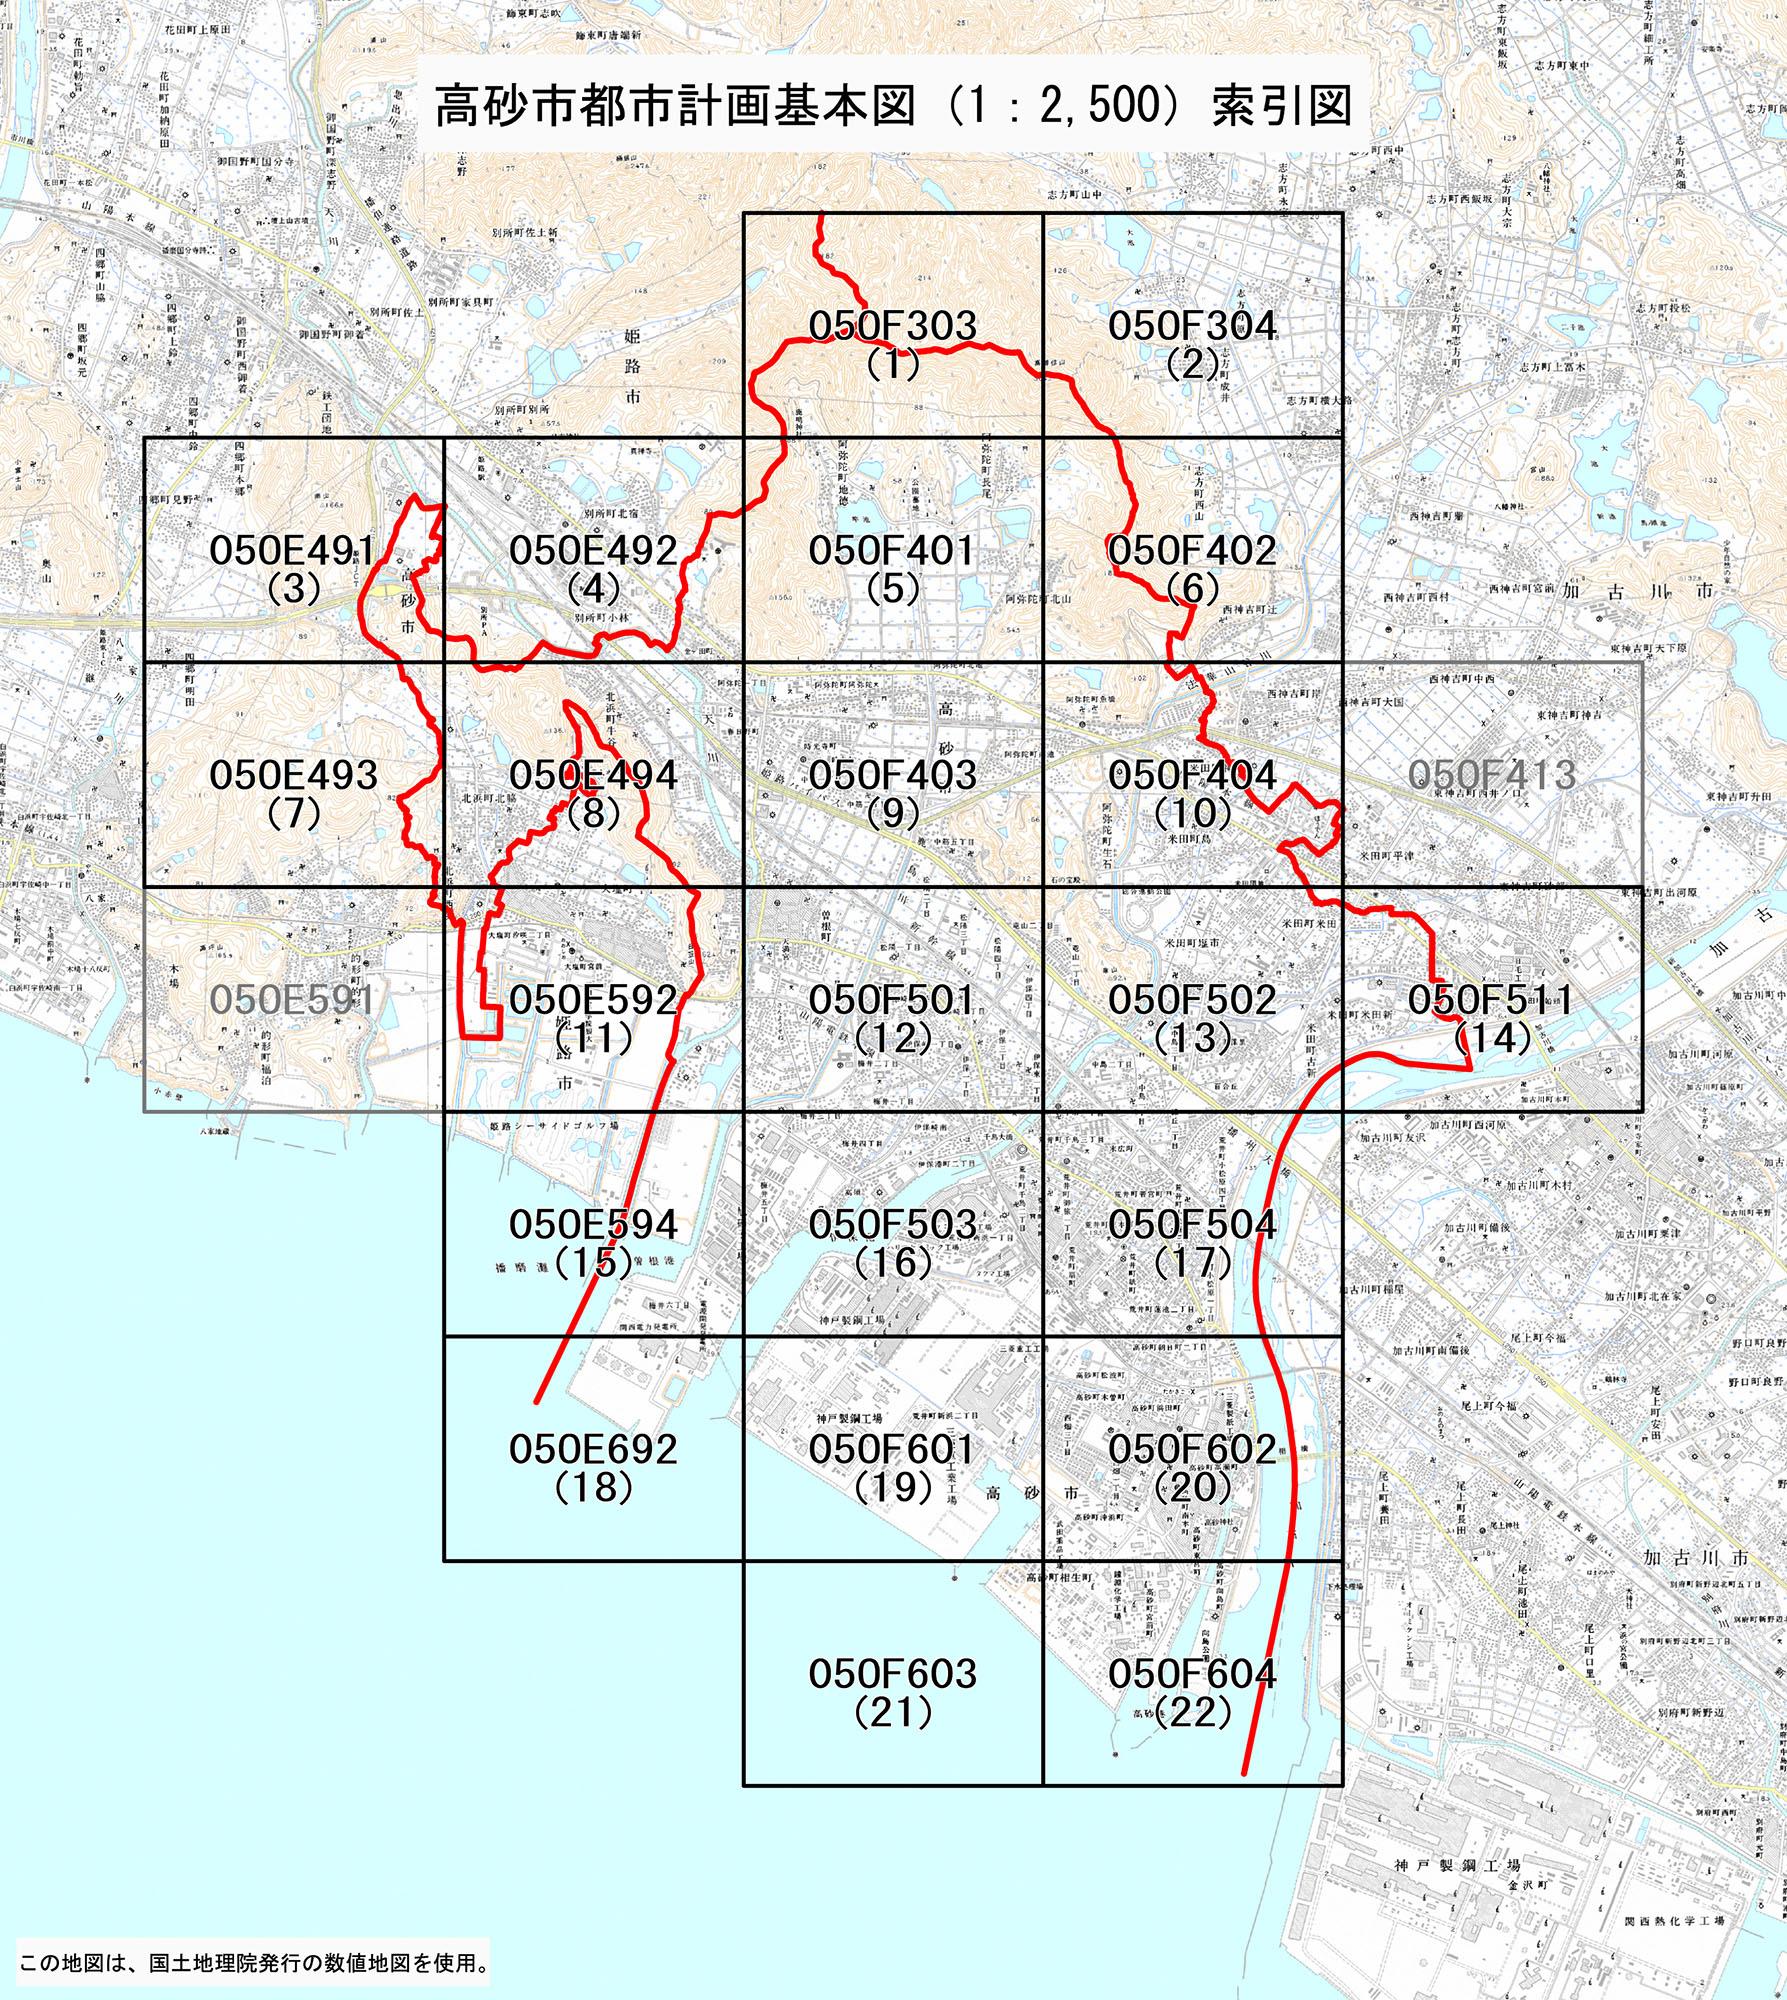 各地区ごとにコードが割り振られた高砂市分計画基本図（2500分の1）索引図